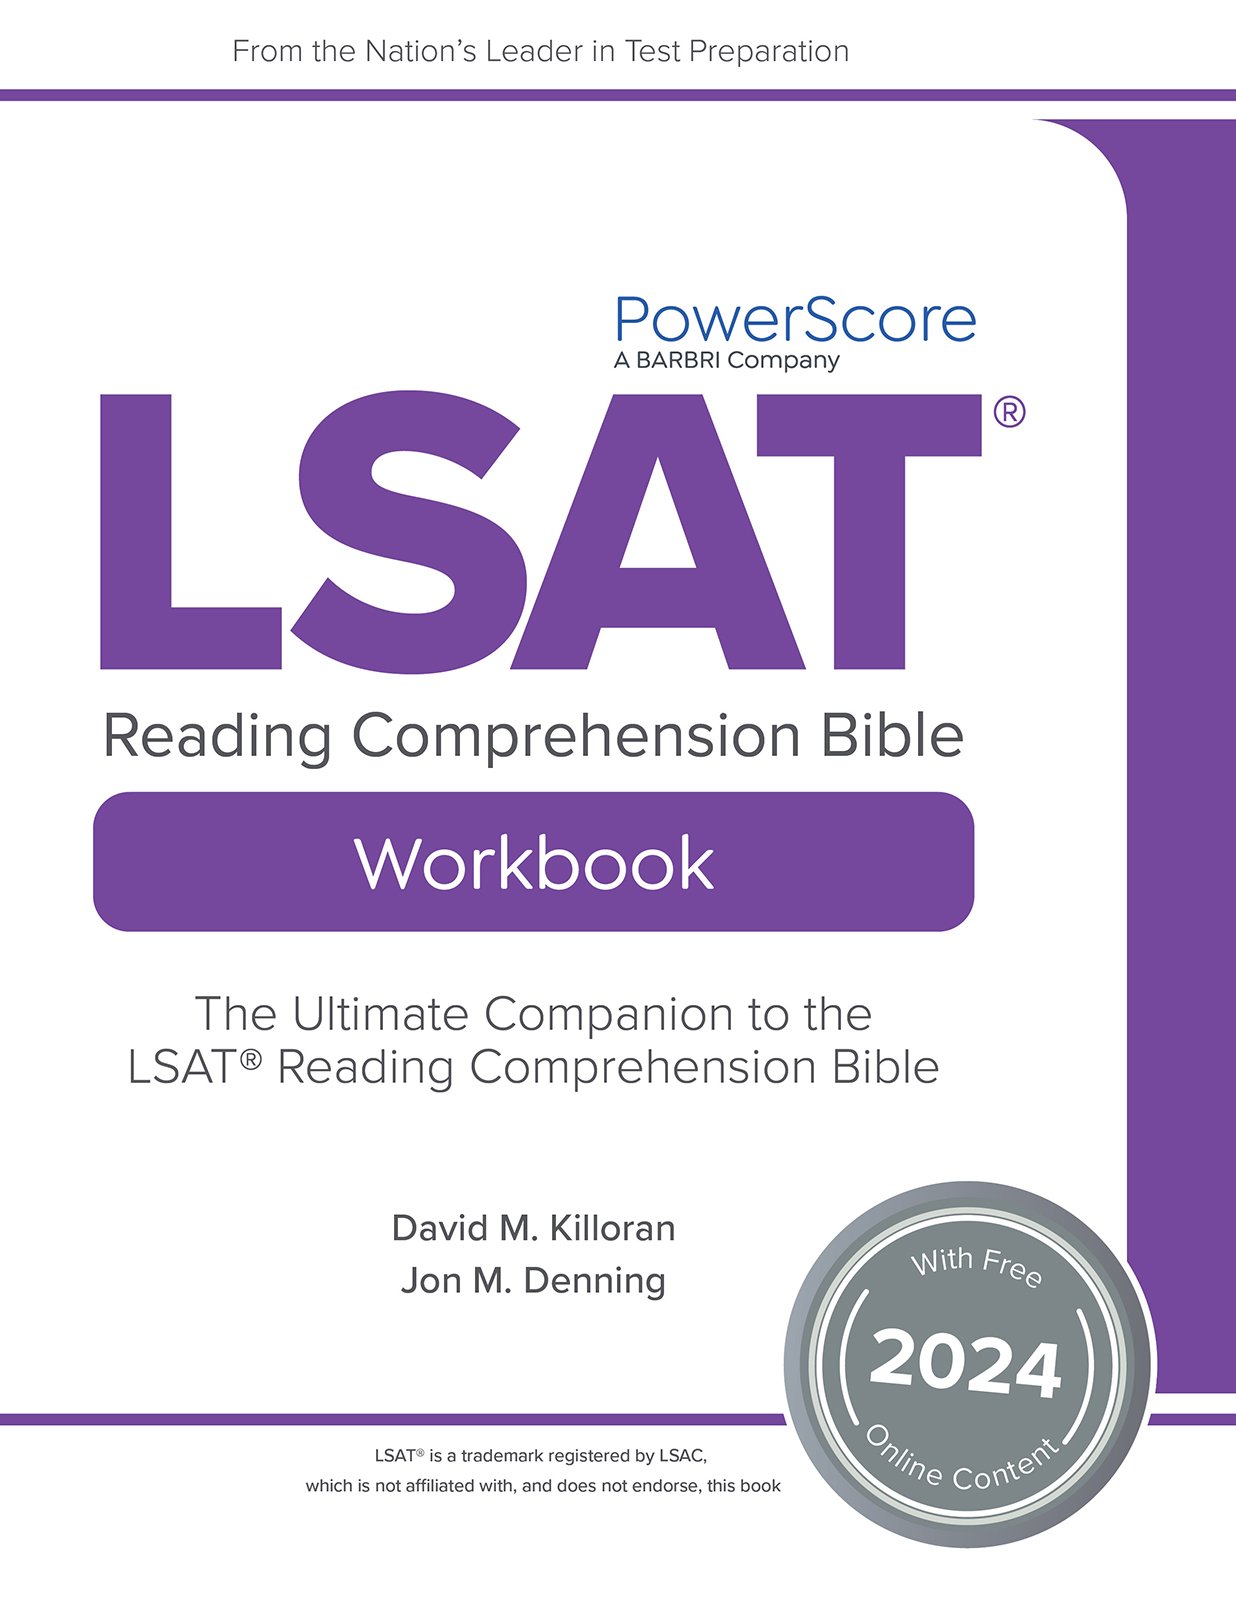 LSAT Reading Comprehension Bible Workbook